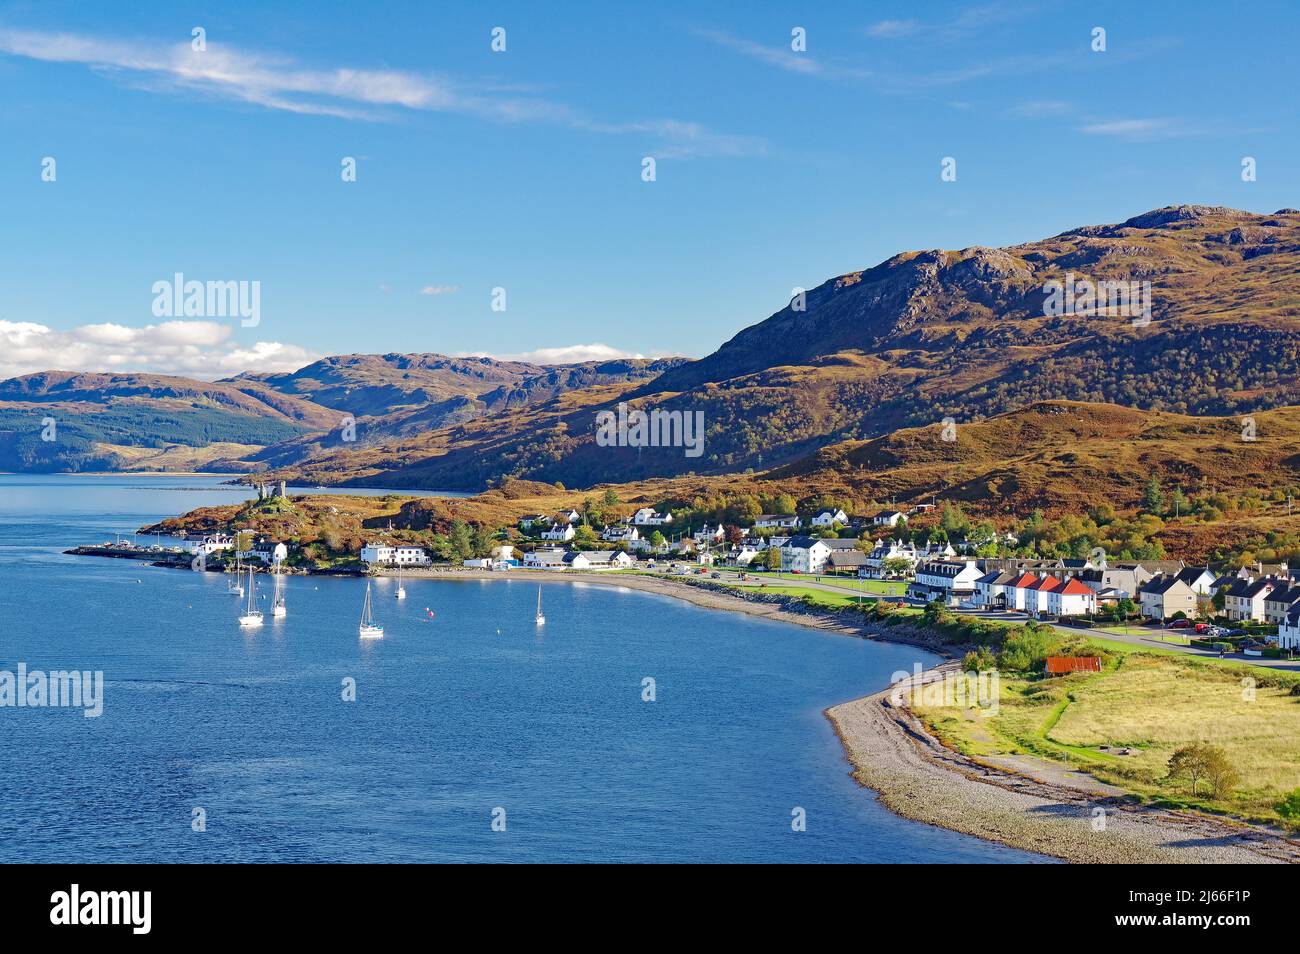 Bucht mit Segelbooten und dem kleinen Ort Kyle of Lochalsh, Herbst, Isle of Skye, Hebriden, Schottland, GROSSBRITANNIEN Banque D'Images